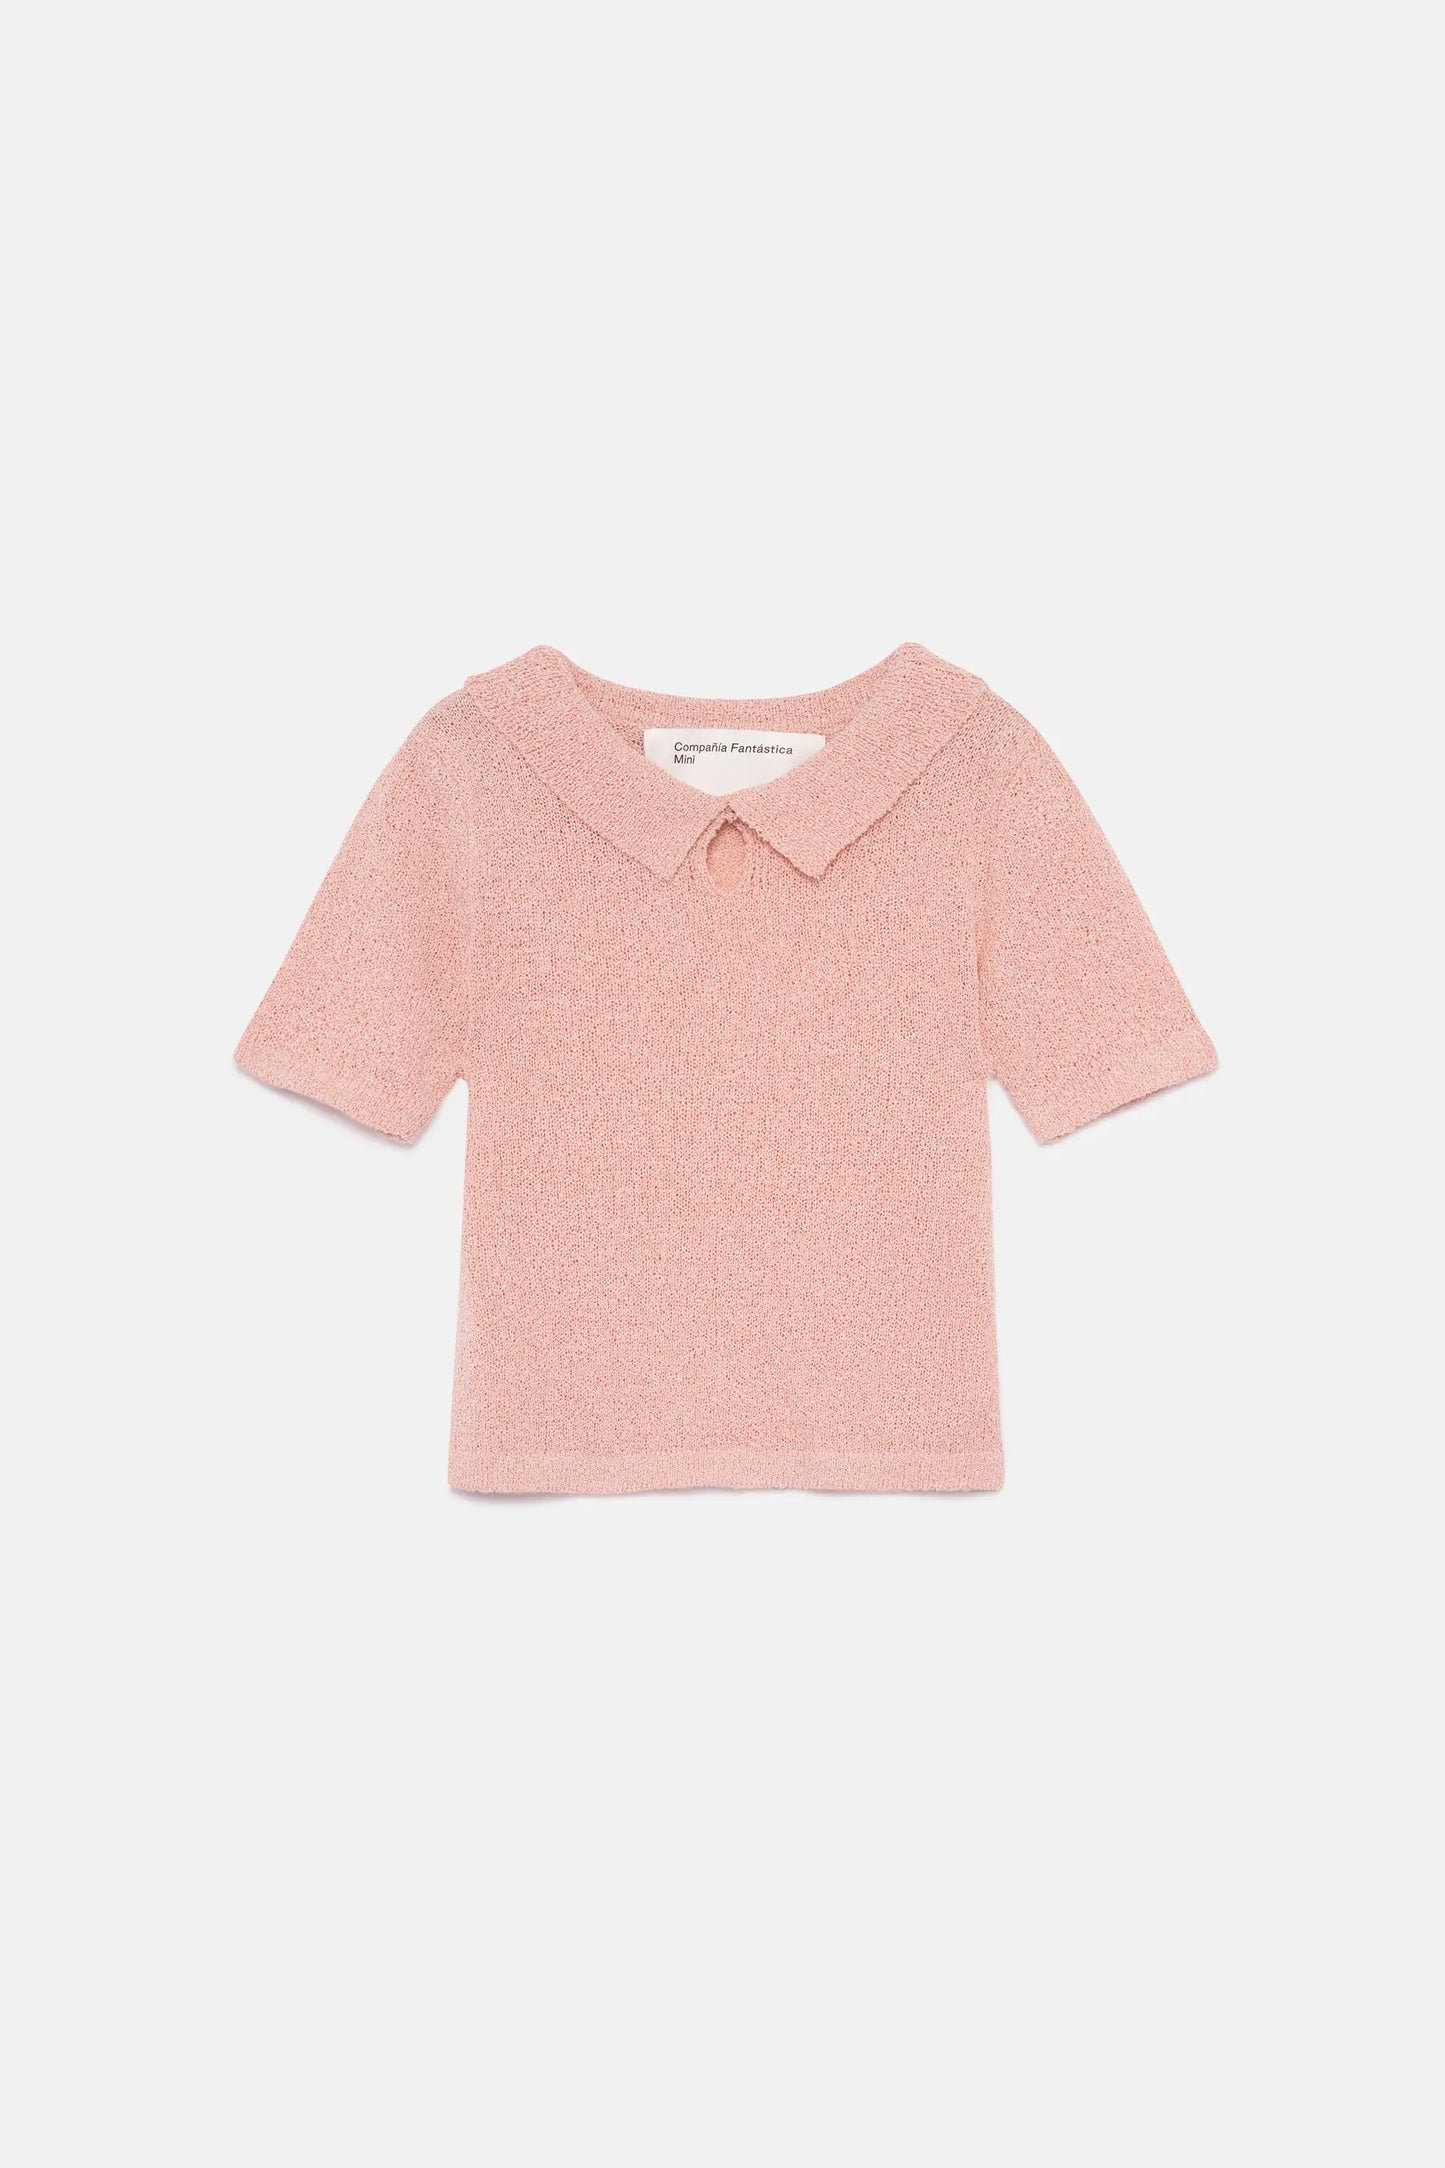 Jersey de niña cuello polo rosa